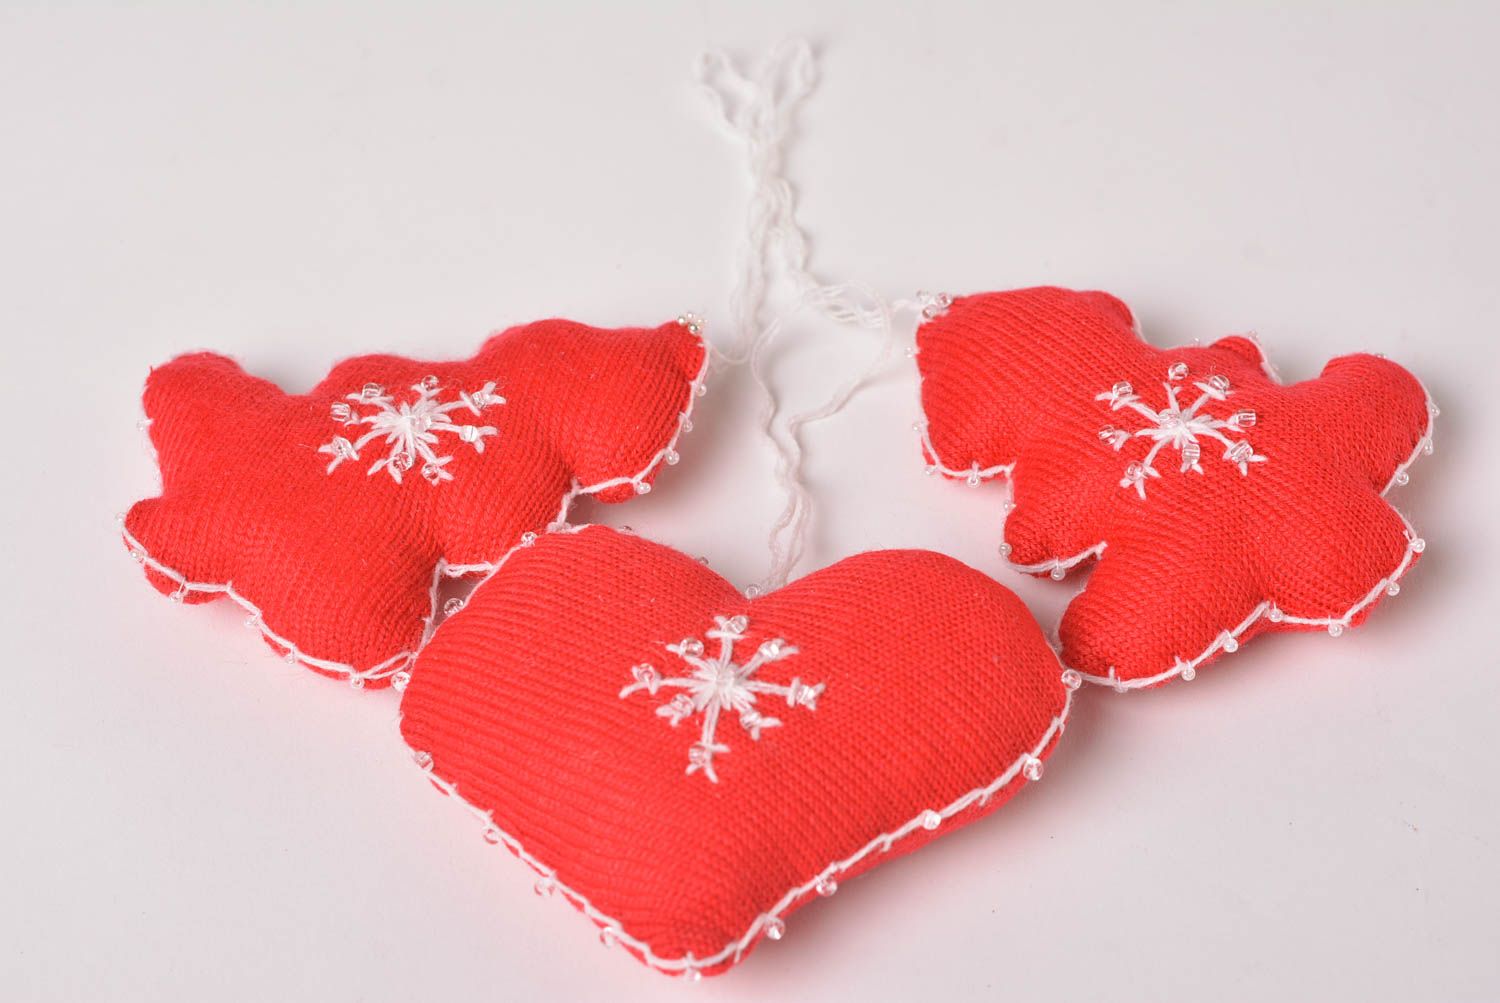 Décorations pour sapin de Noël faites main 2 sapins et coeur rouges Déco Noël photo 3